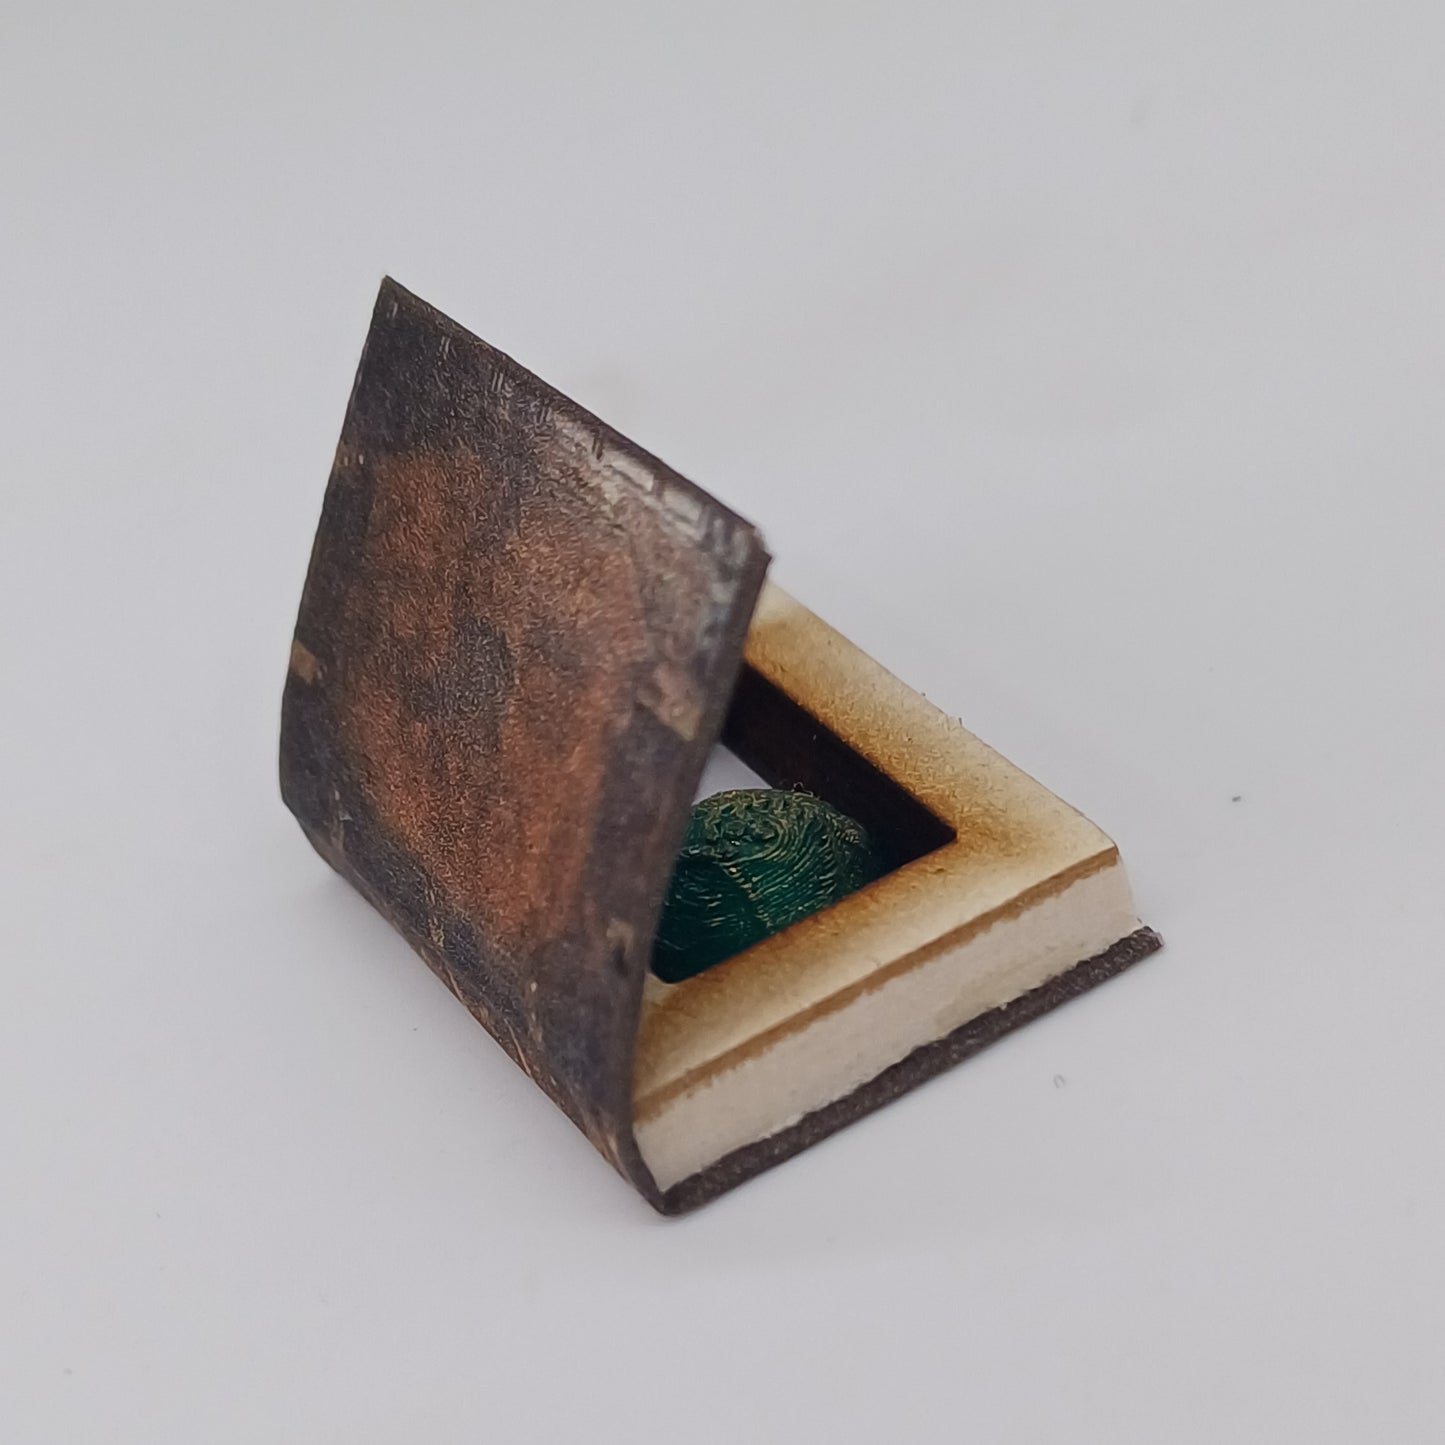 1:12 scale miniature book hiding place